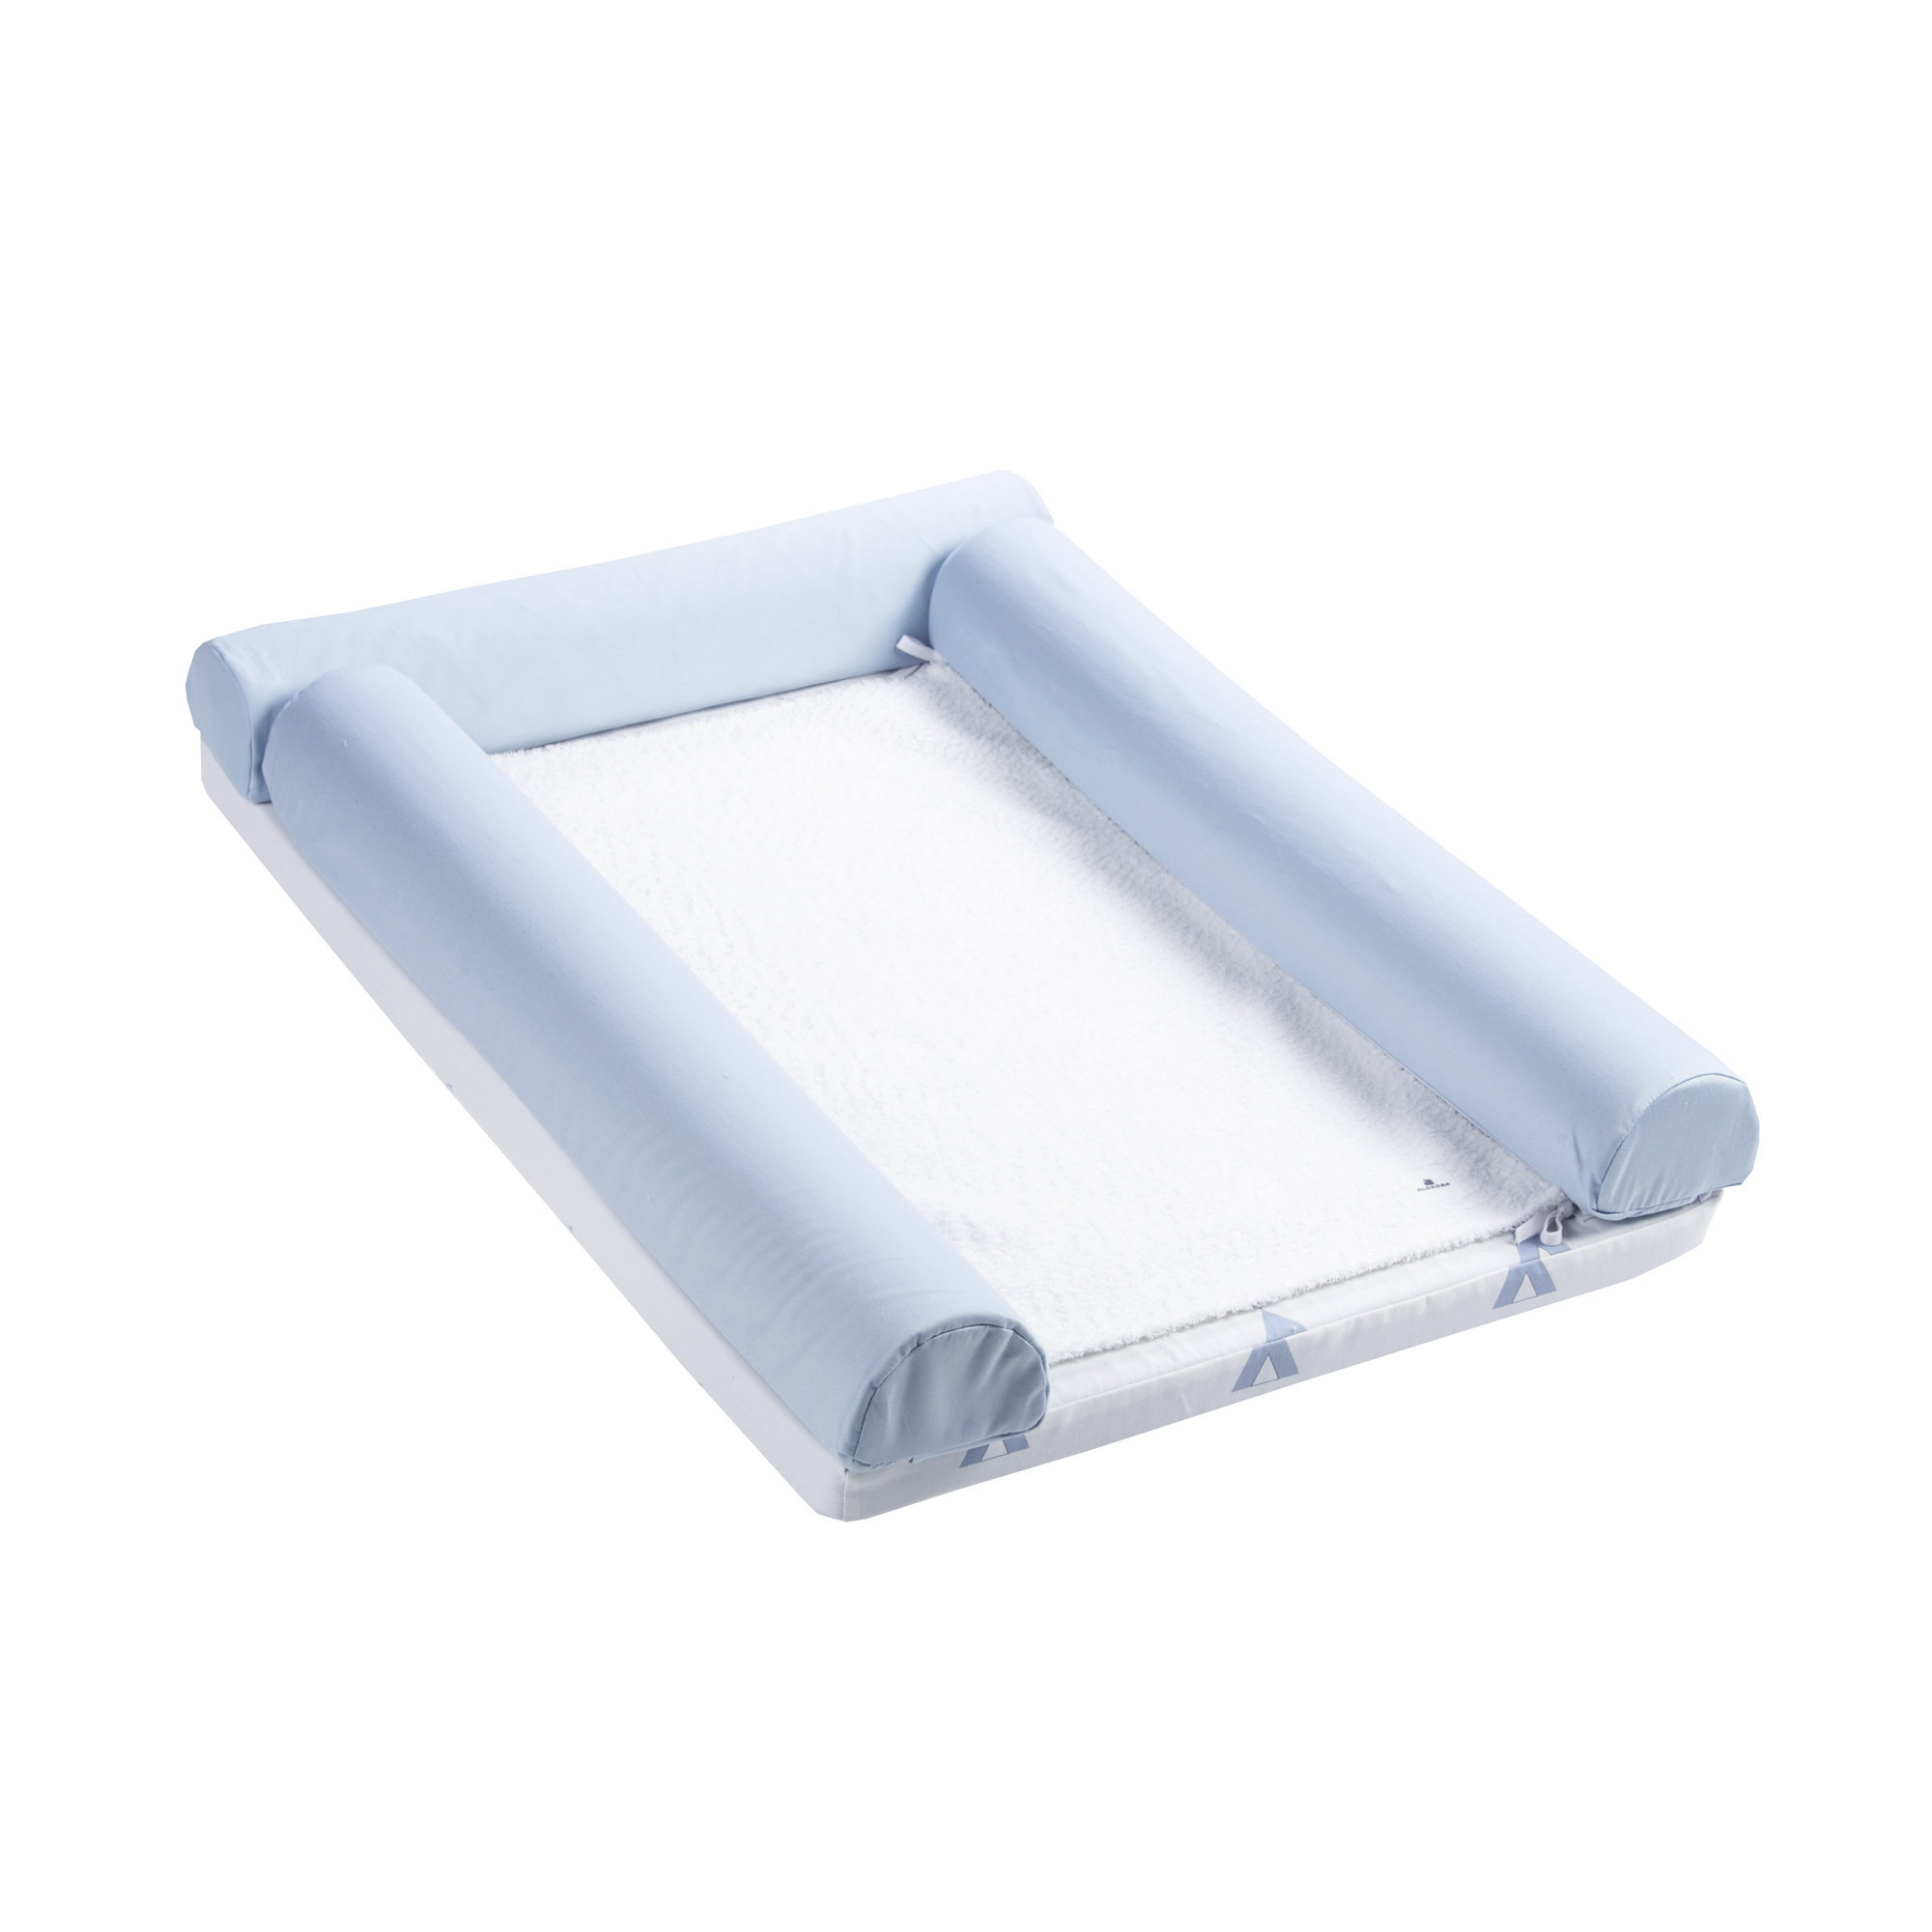 Cambiandor de cuna transformable en cama 70x140 cm Indiana Blu